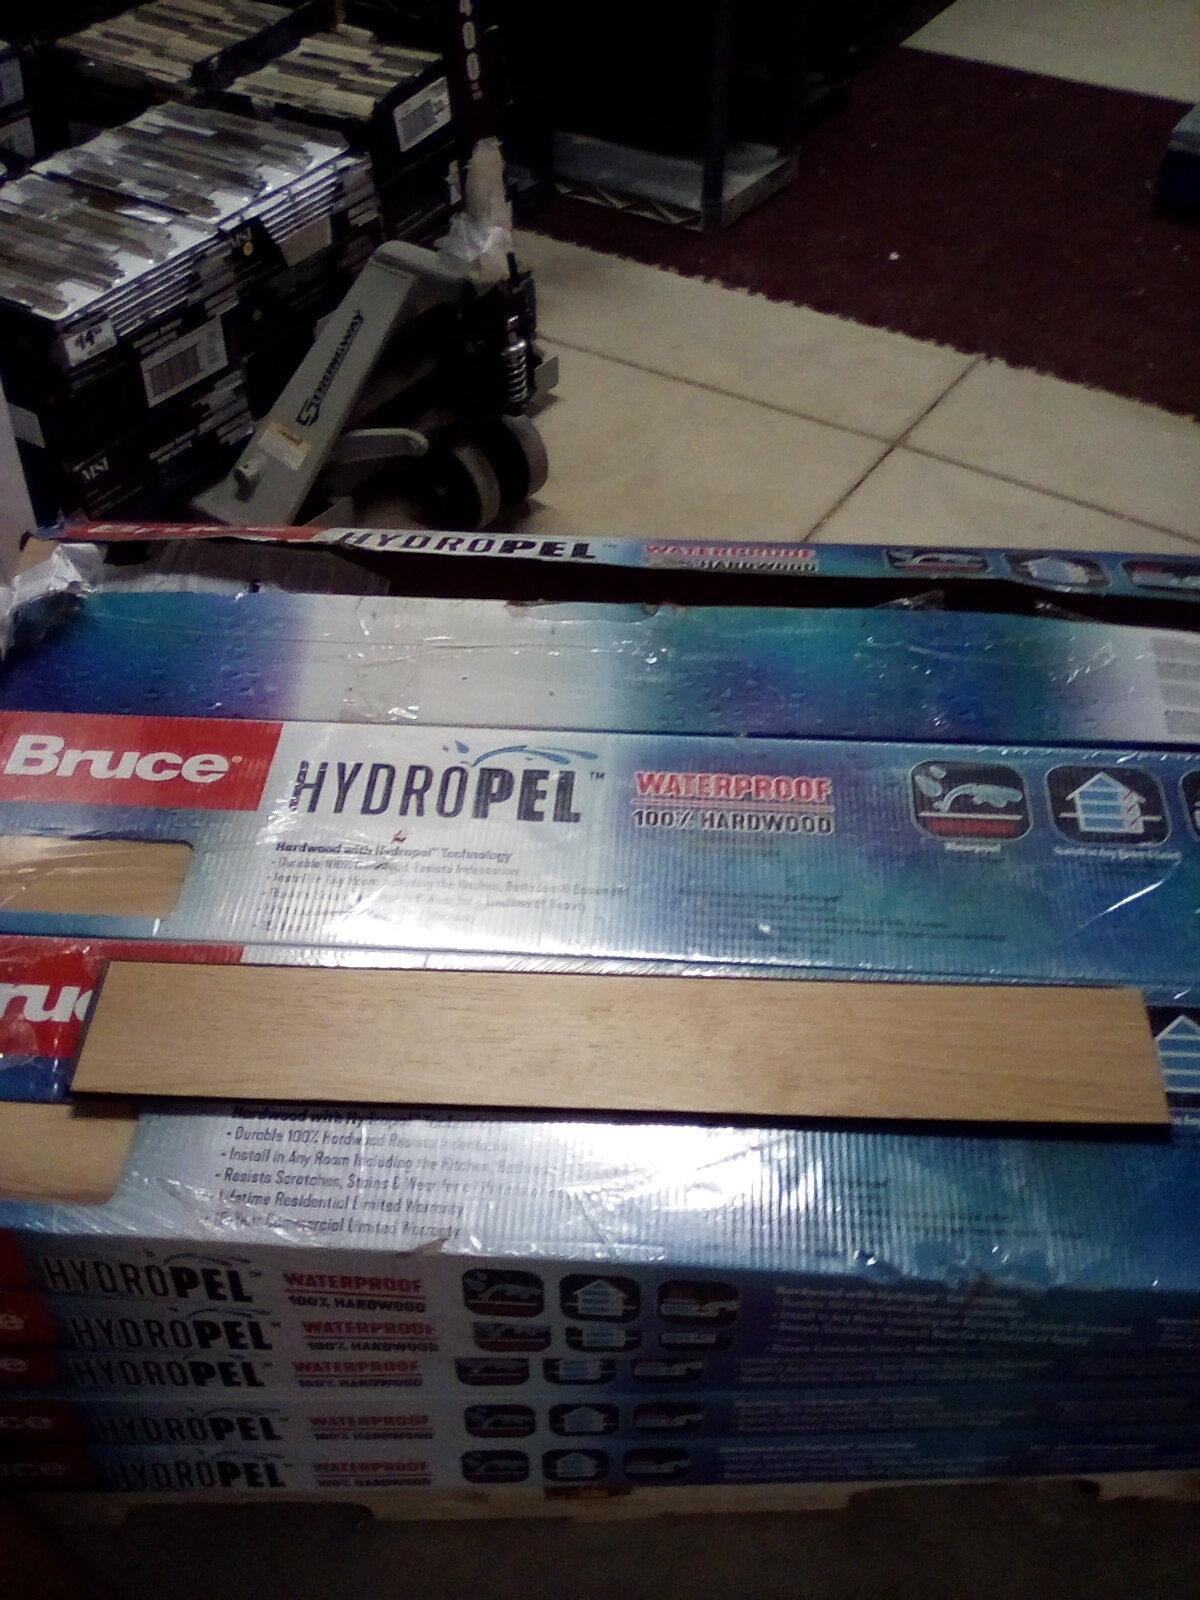 Bruce Hydropel  Waterproof 100%  Hardwood